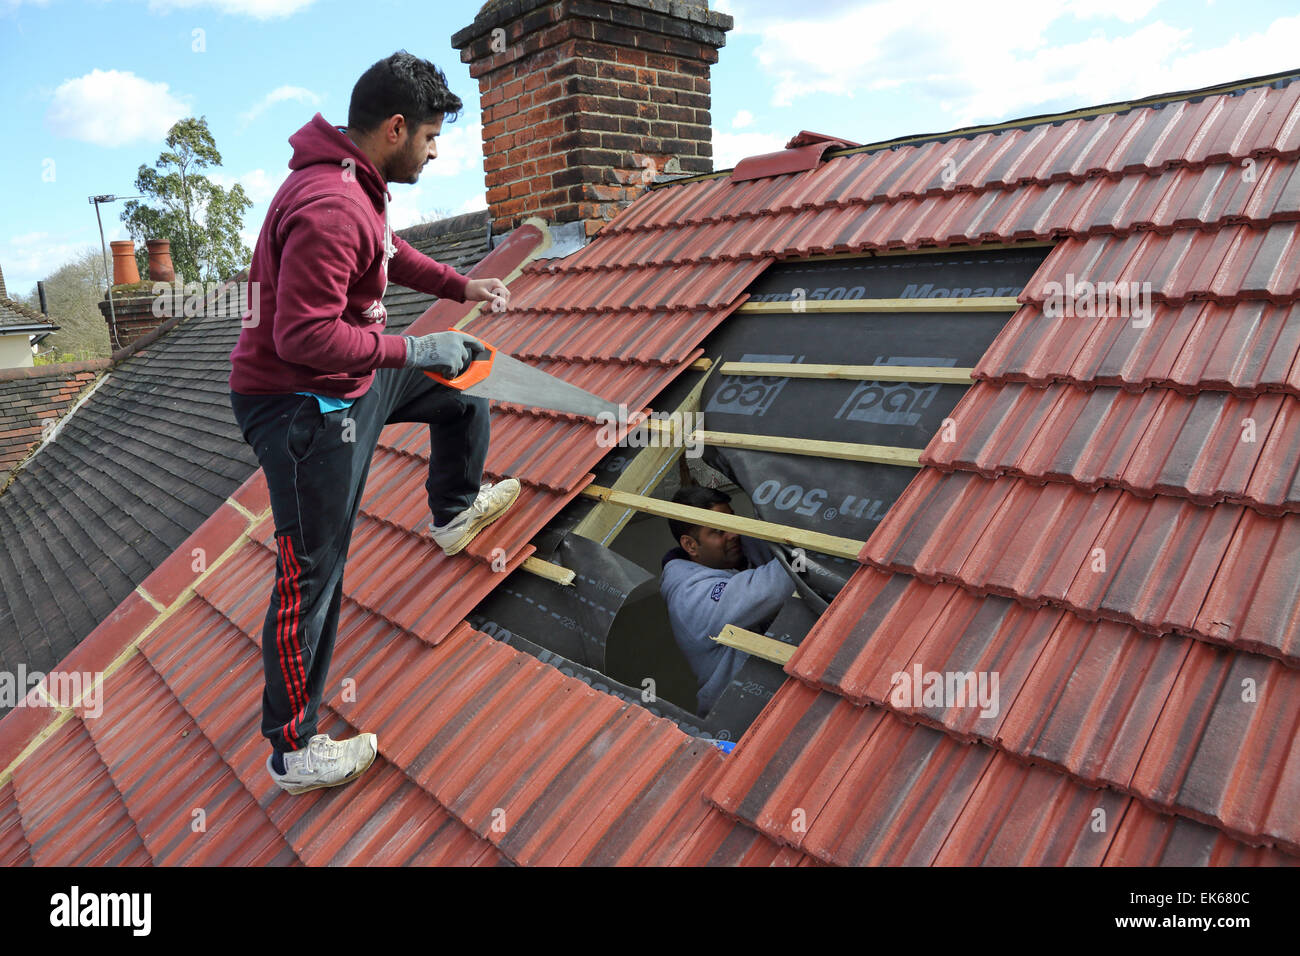 Les constructeurs de la préparation à l'installation d'une fenêtre de toit sur une toiture de tuiles dans le sud de Londres Banque D'Images